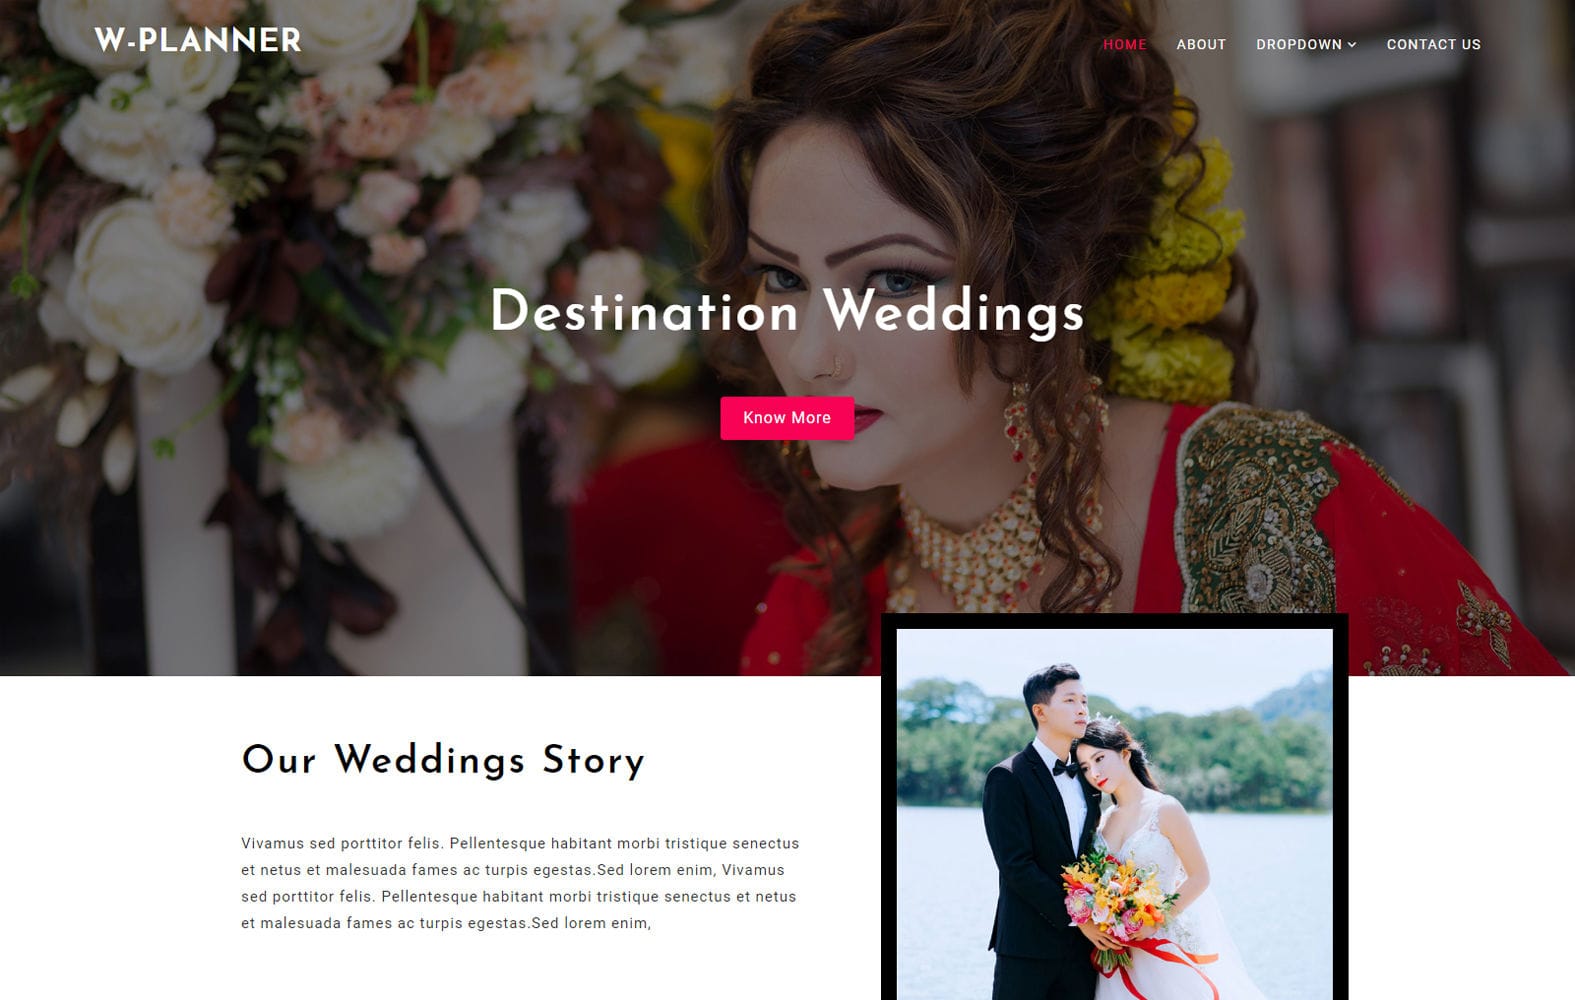 W Planner Wedding Website Template W3layouts